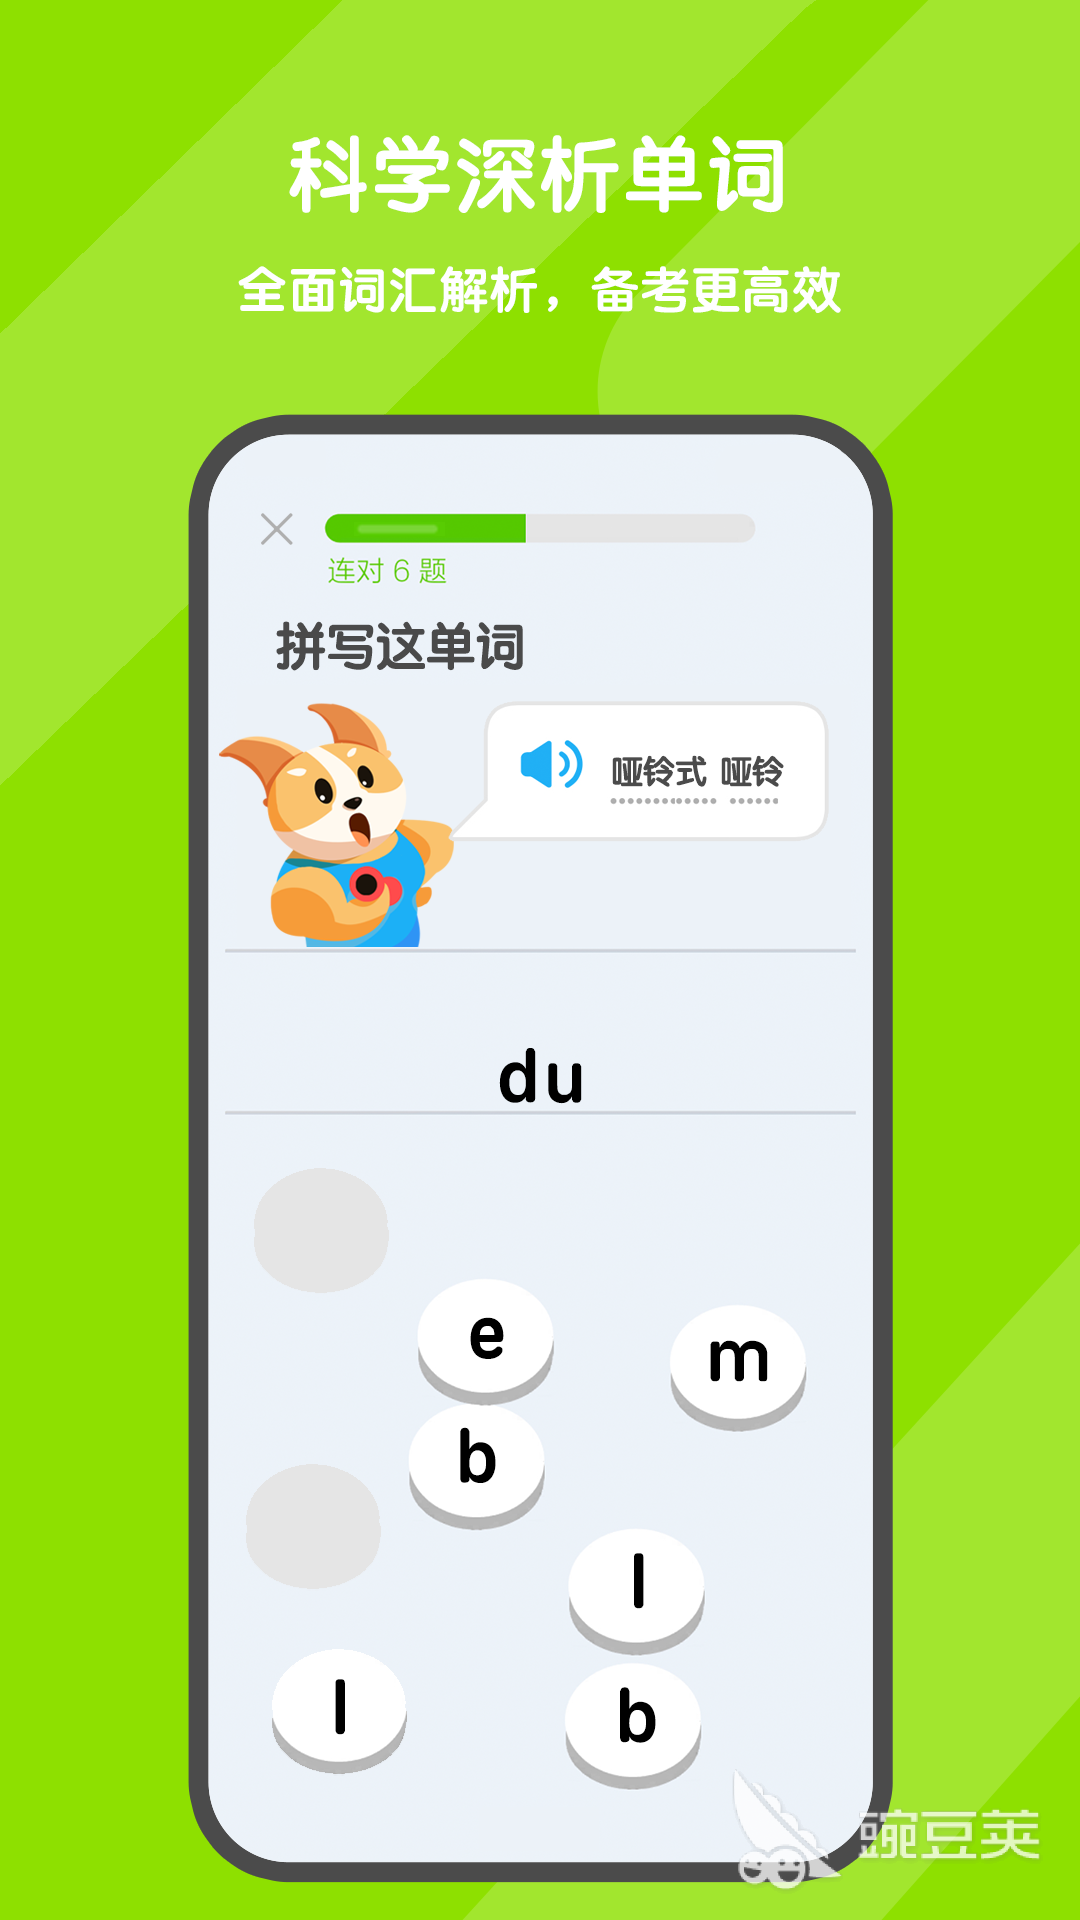 学英语单词的app推荐免费 英语单词学习的软件分享